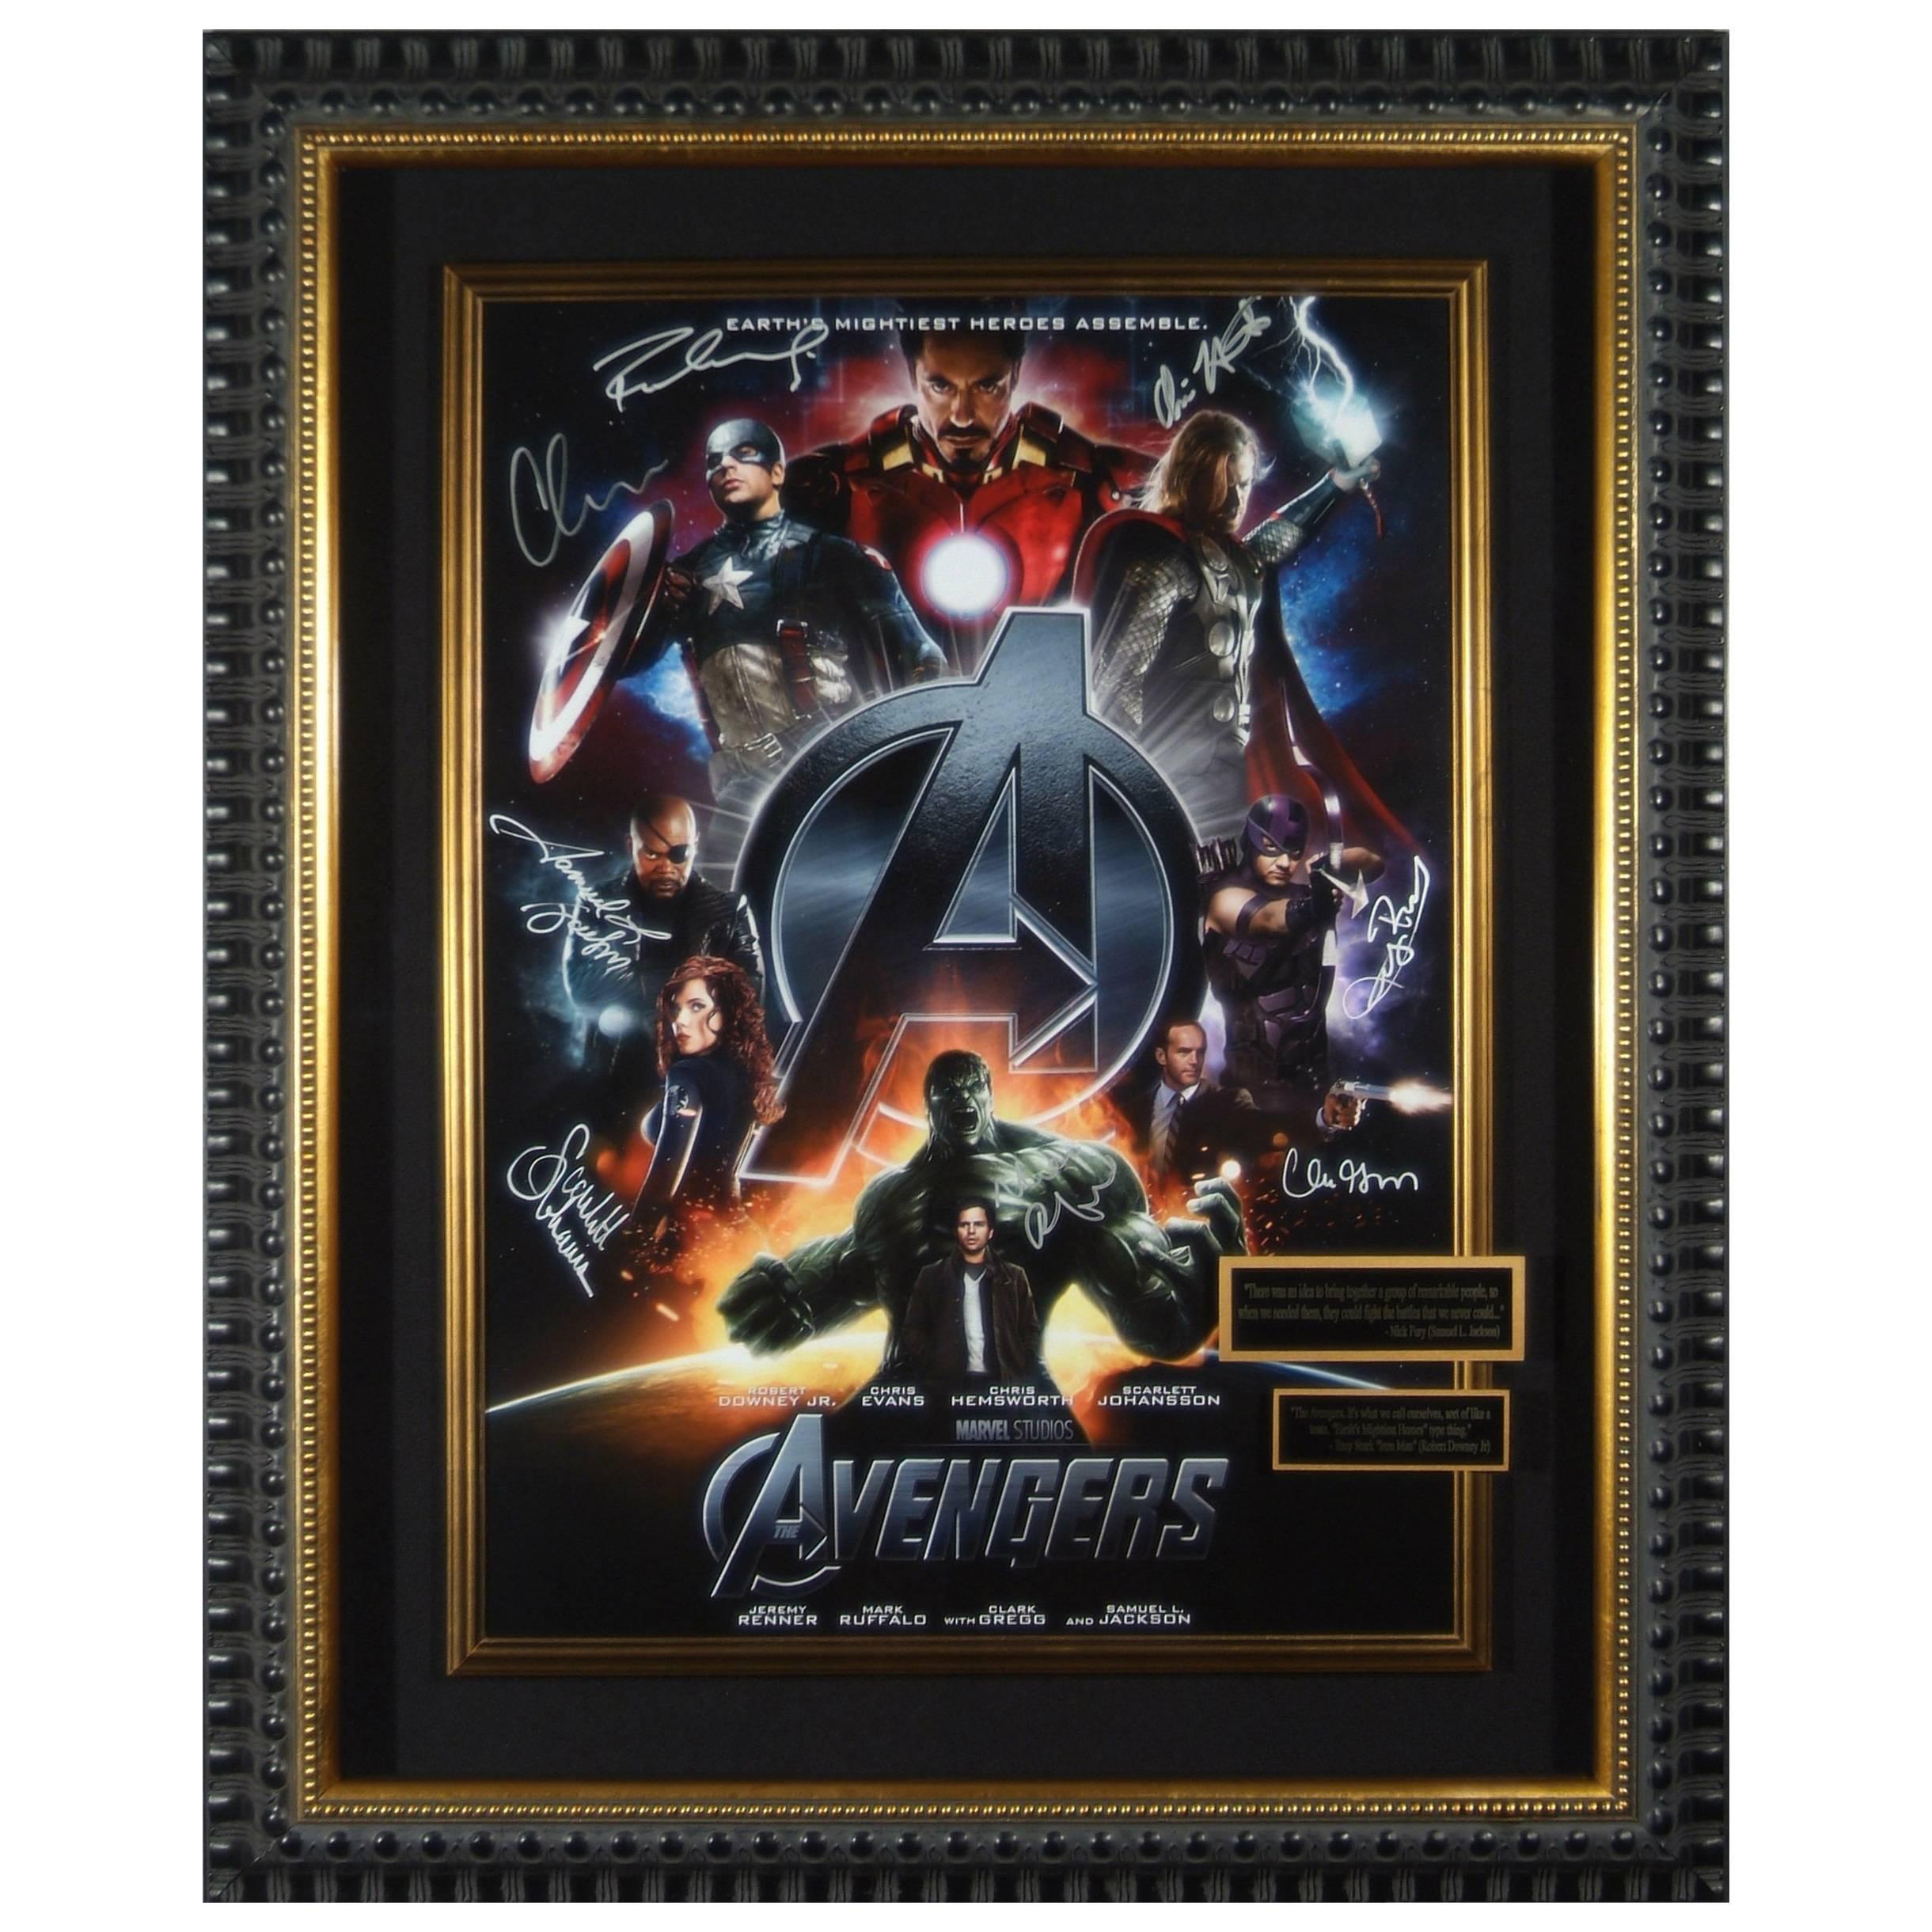 Marvel Avengers Complete Cast Autographed Poster Framed Memorabilia Display For Sale